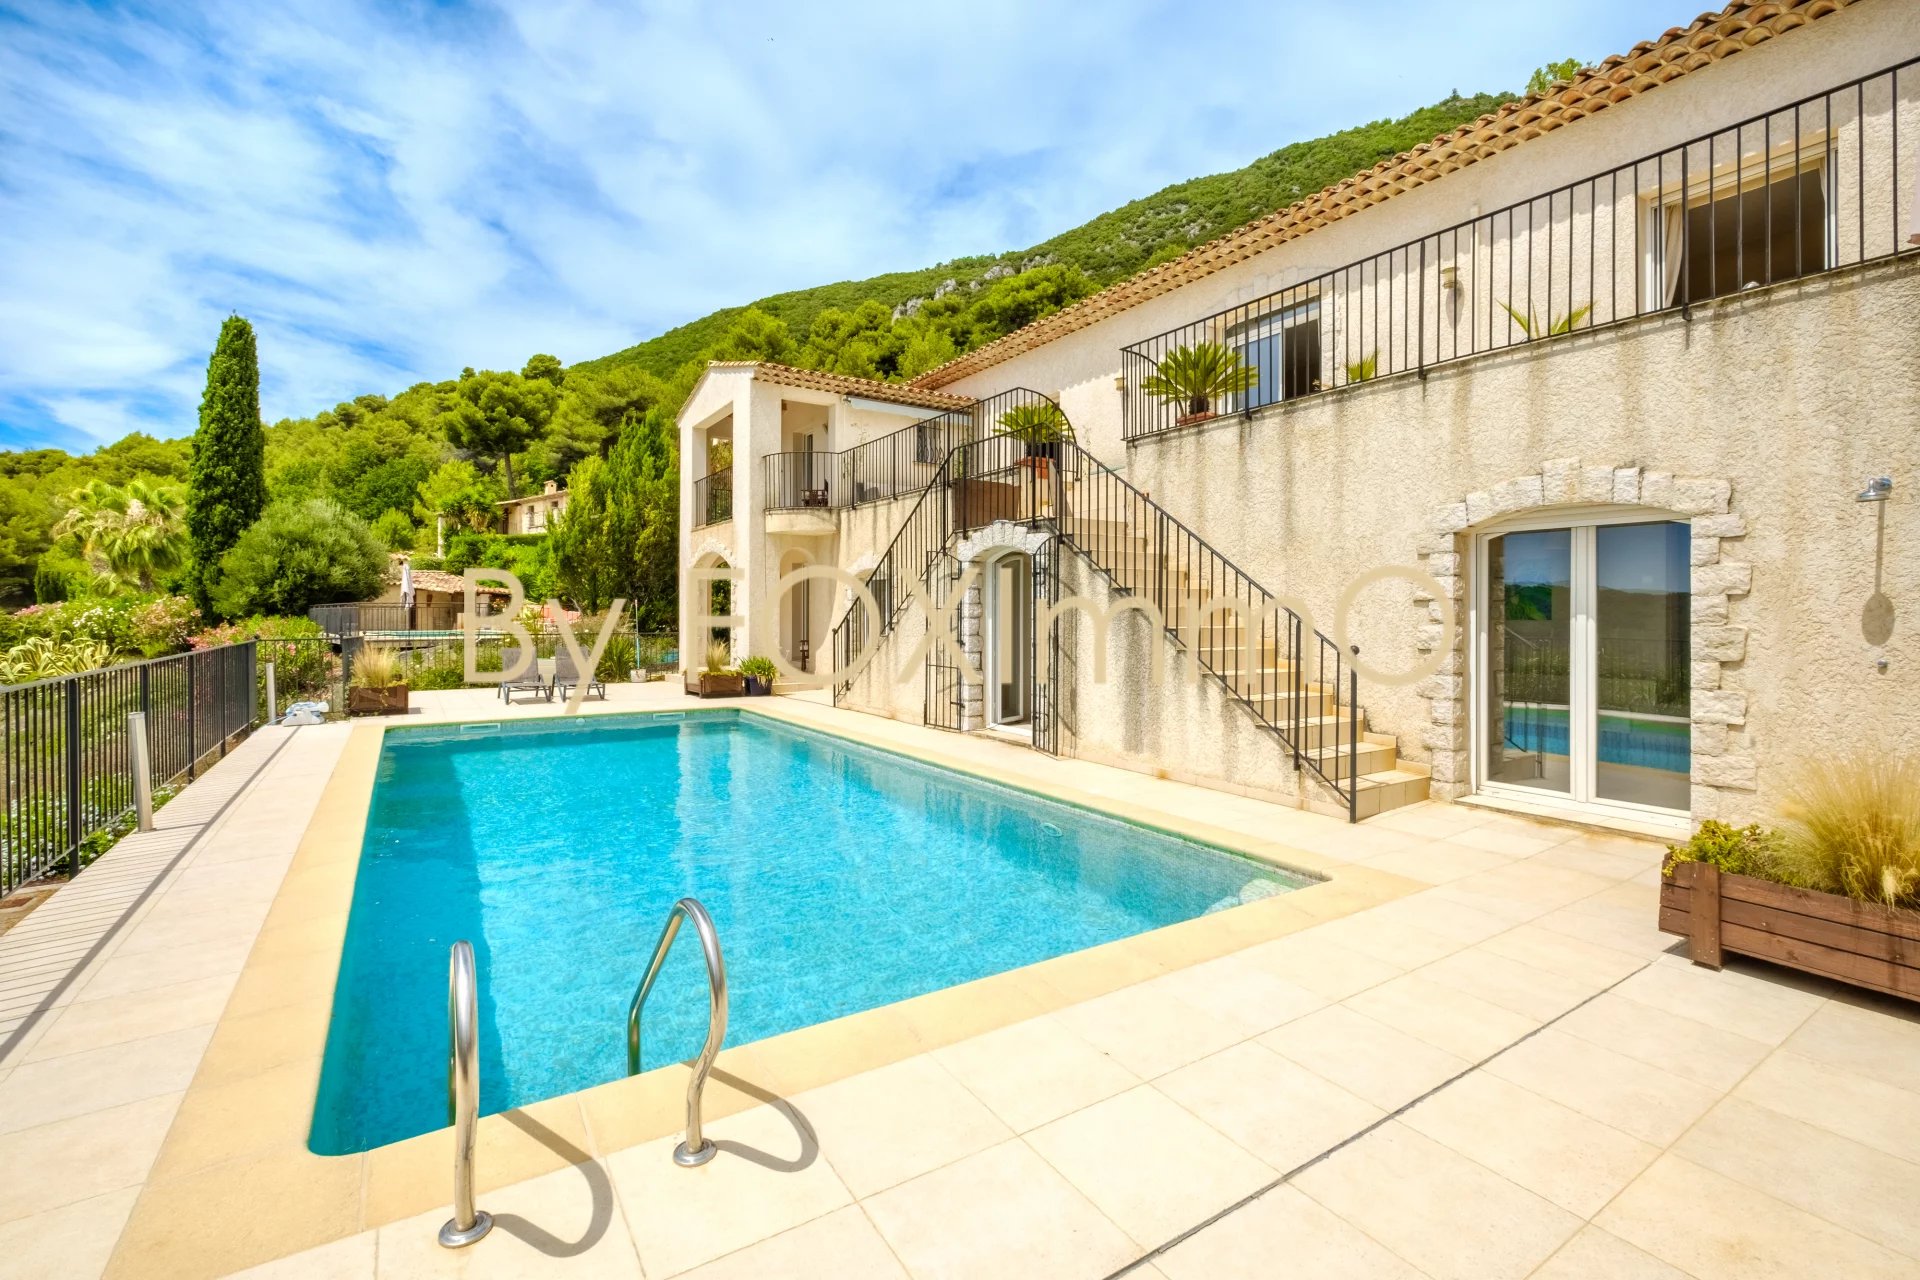 In vendita in Costa Azzurra, Tourrettes, villa recente, vista panoramica sul mare e sulle montagne, tranquilla, dominante, piscina, garage, ampio giardino